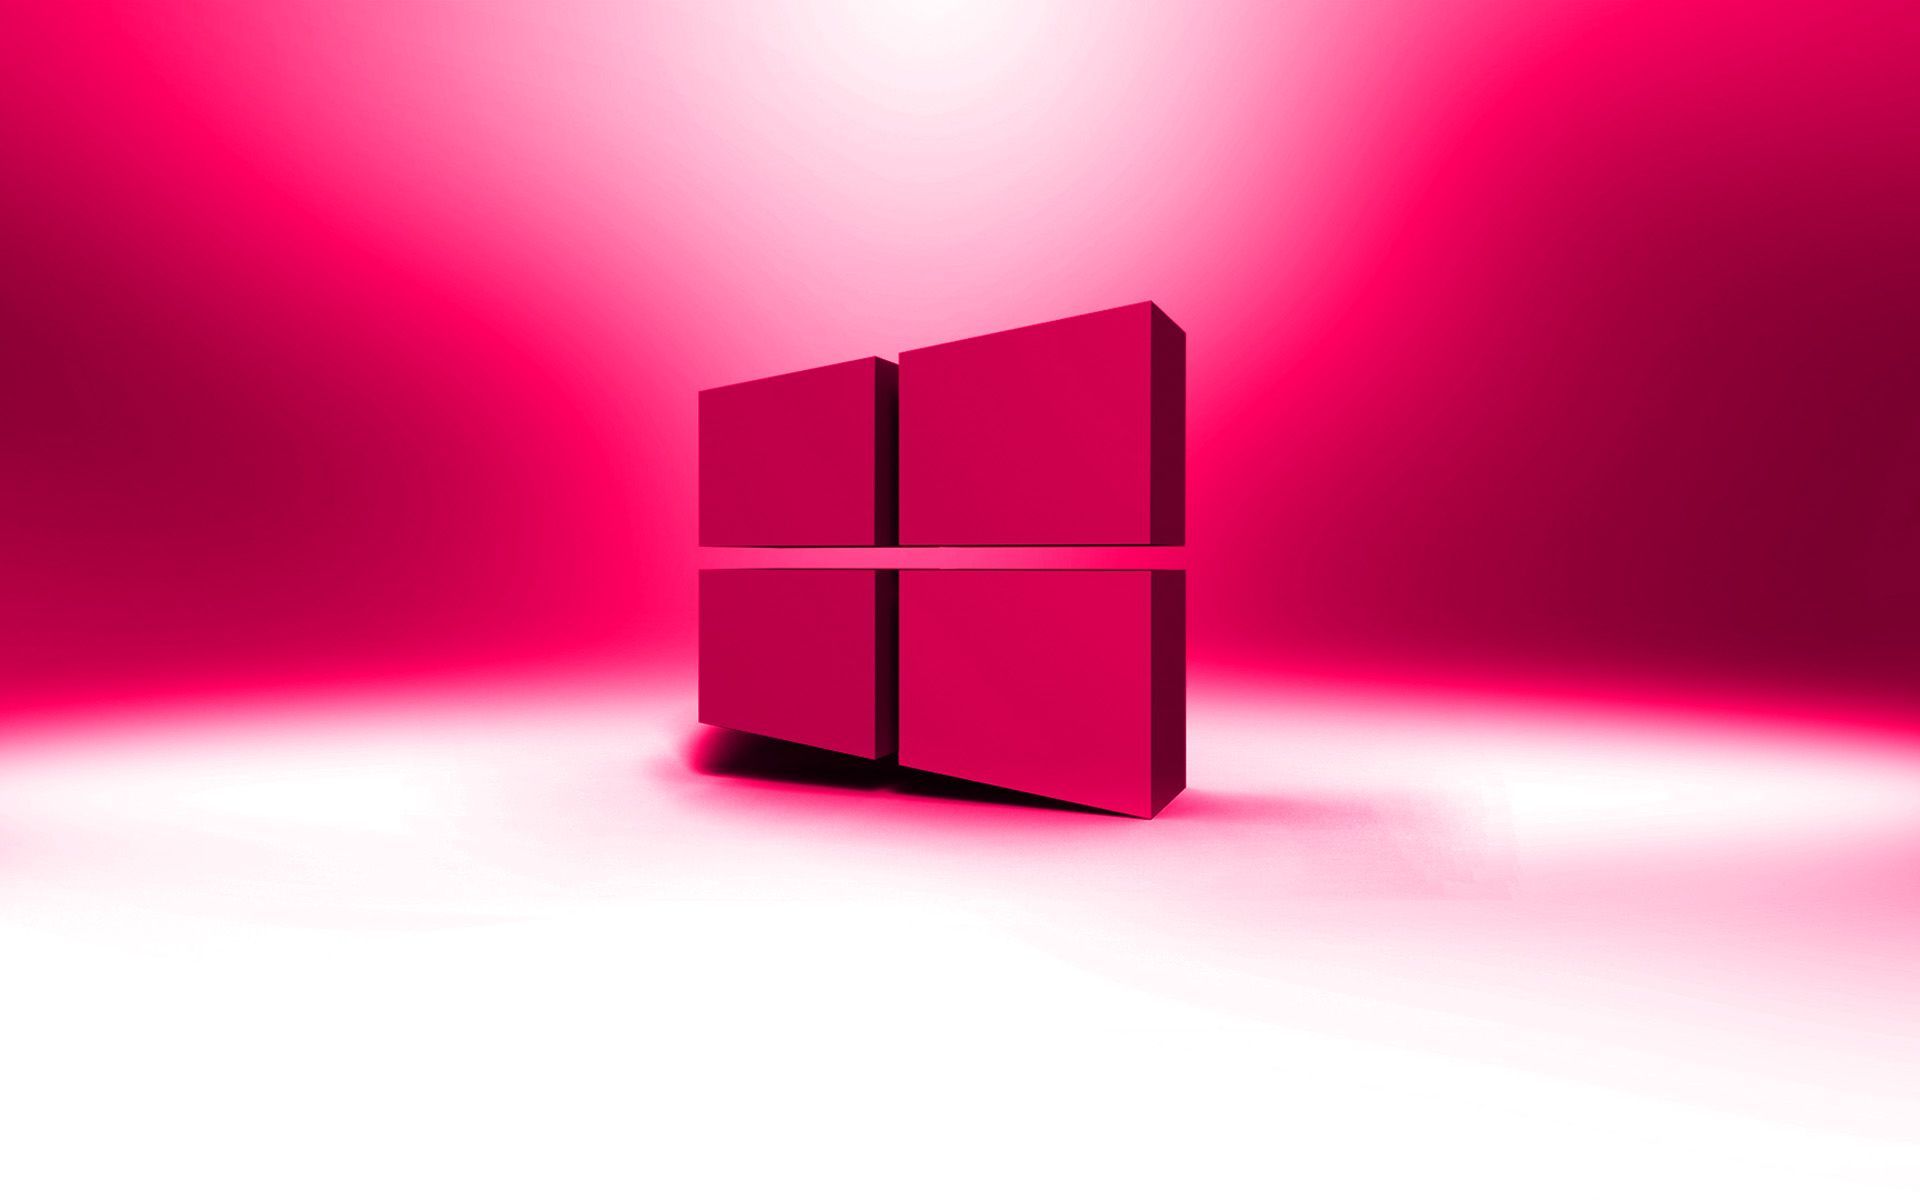 Bạn đang tìm kiếm một hình nền màu hồng dễ thương cho màn hình desktop của mình? Đừng bỏ lỡ bức ảnh hình nền màu hồng này! Với các cửa sổ màu hồng tươi sáng, nó sẽ mang lại cho bạn sự trẻ trung và năng động cho không gian làm việc của bạn. Hãy kích hoạt màn hình máy tính của bạn để xem bức ảnh đẹp này ngay!